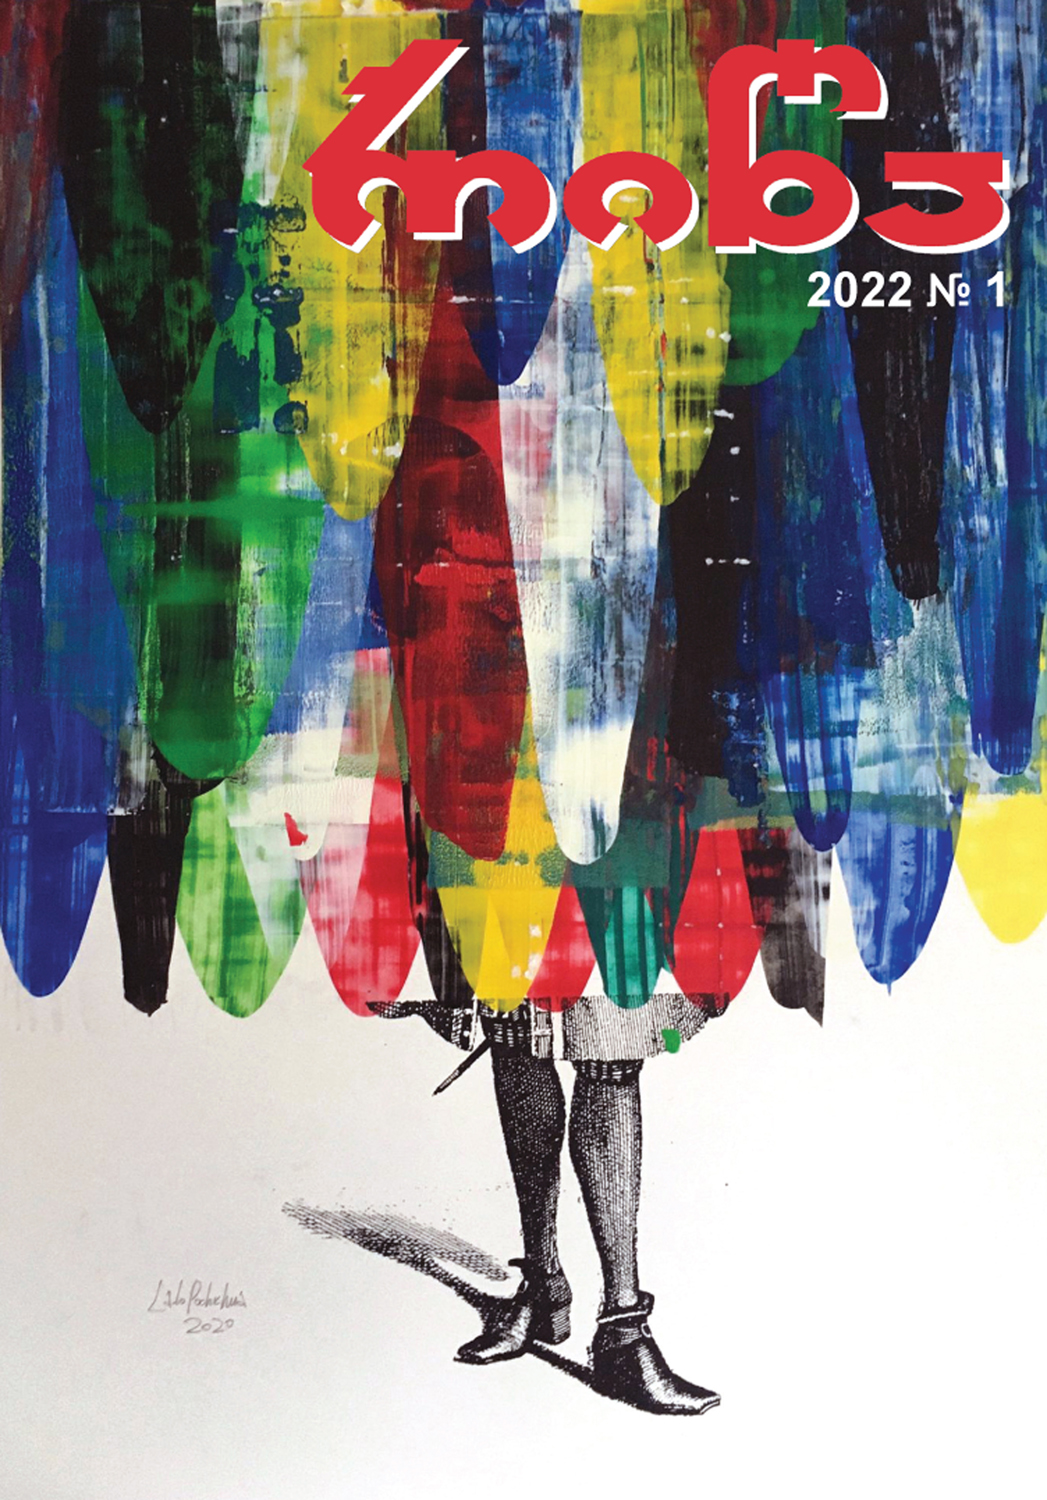 გამოვიდა ჟურნალ „რიწის“ 2022 წლის 1-ლი ნომერი